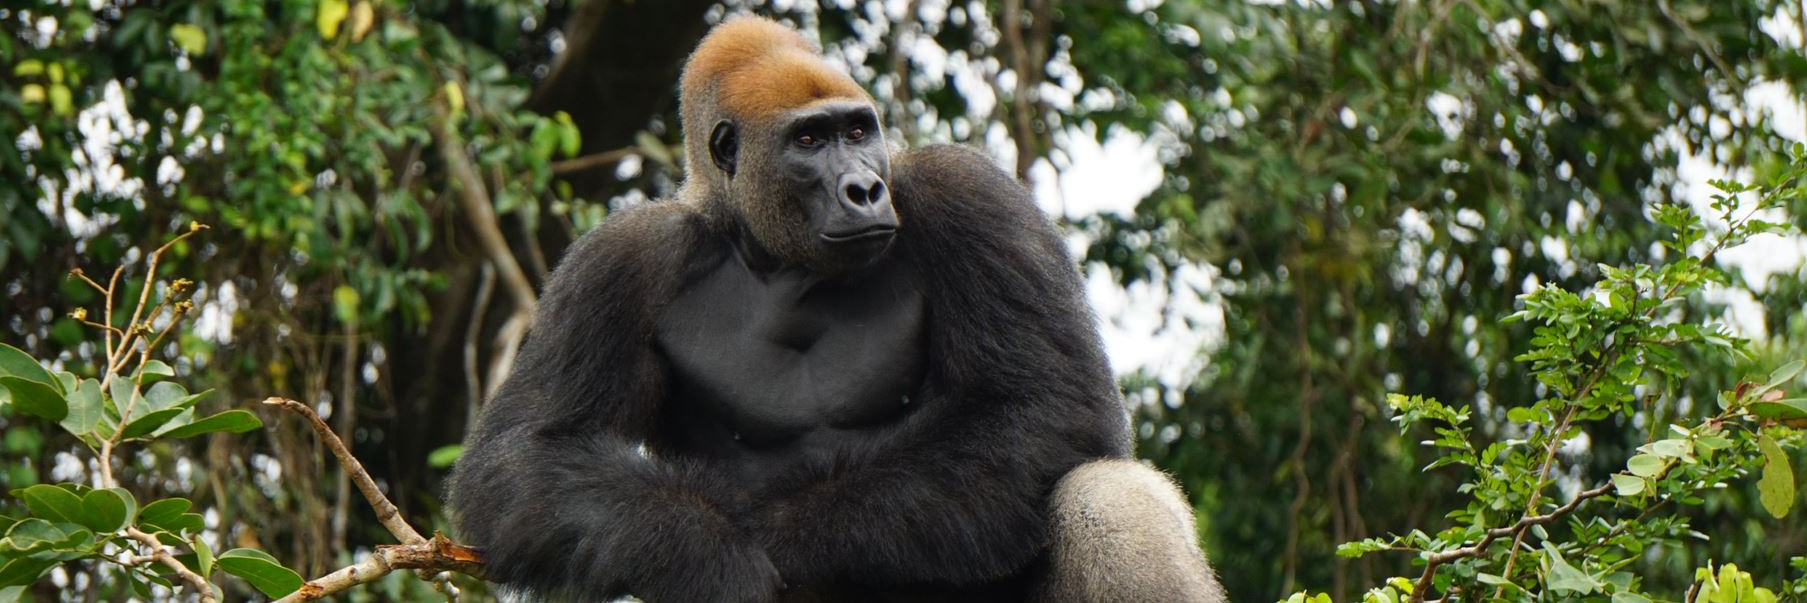 Male gorilla in a tree